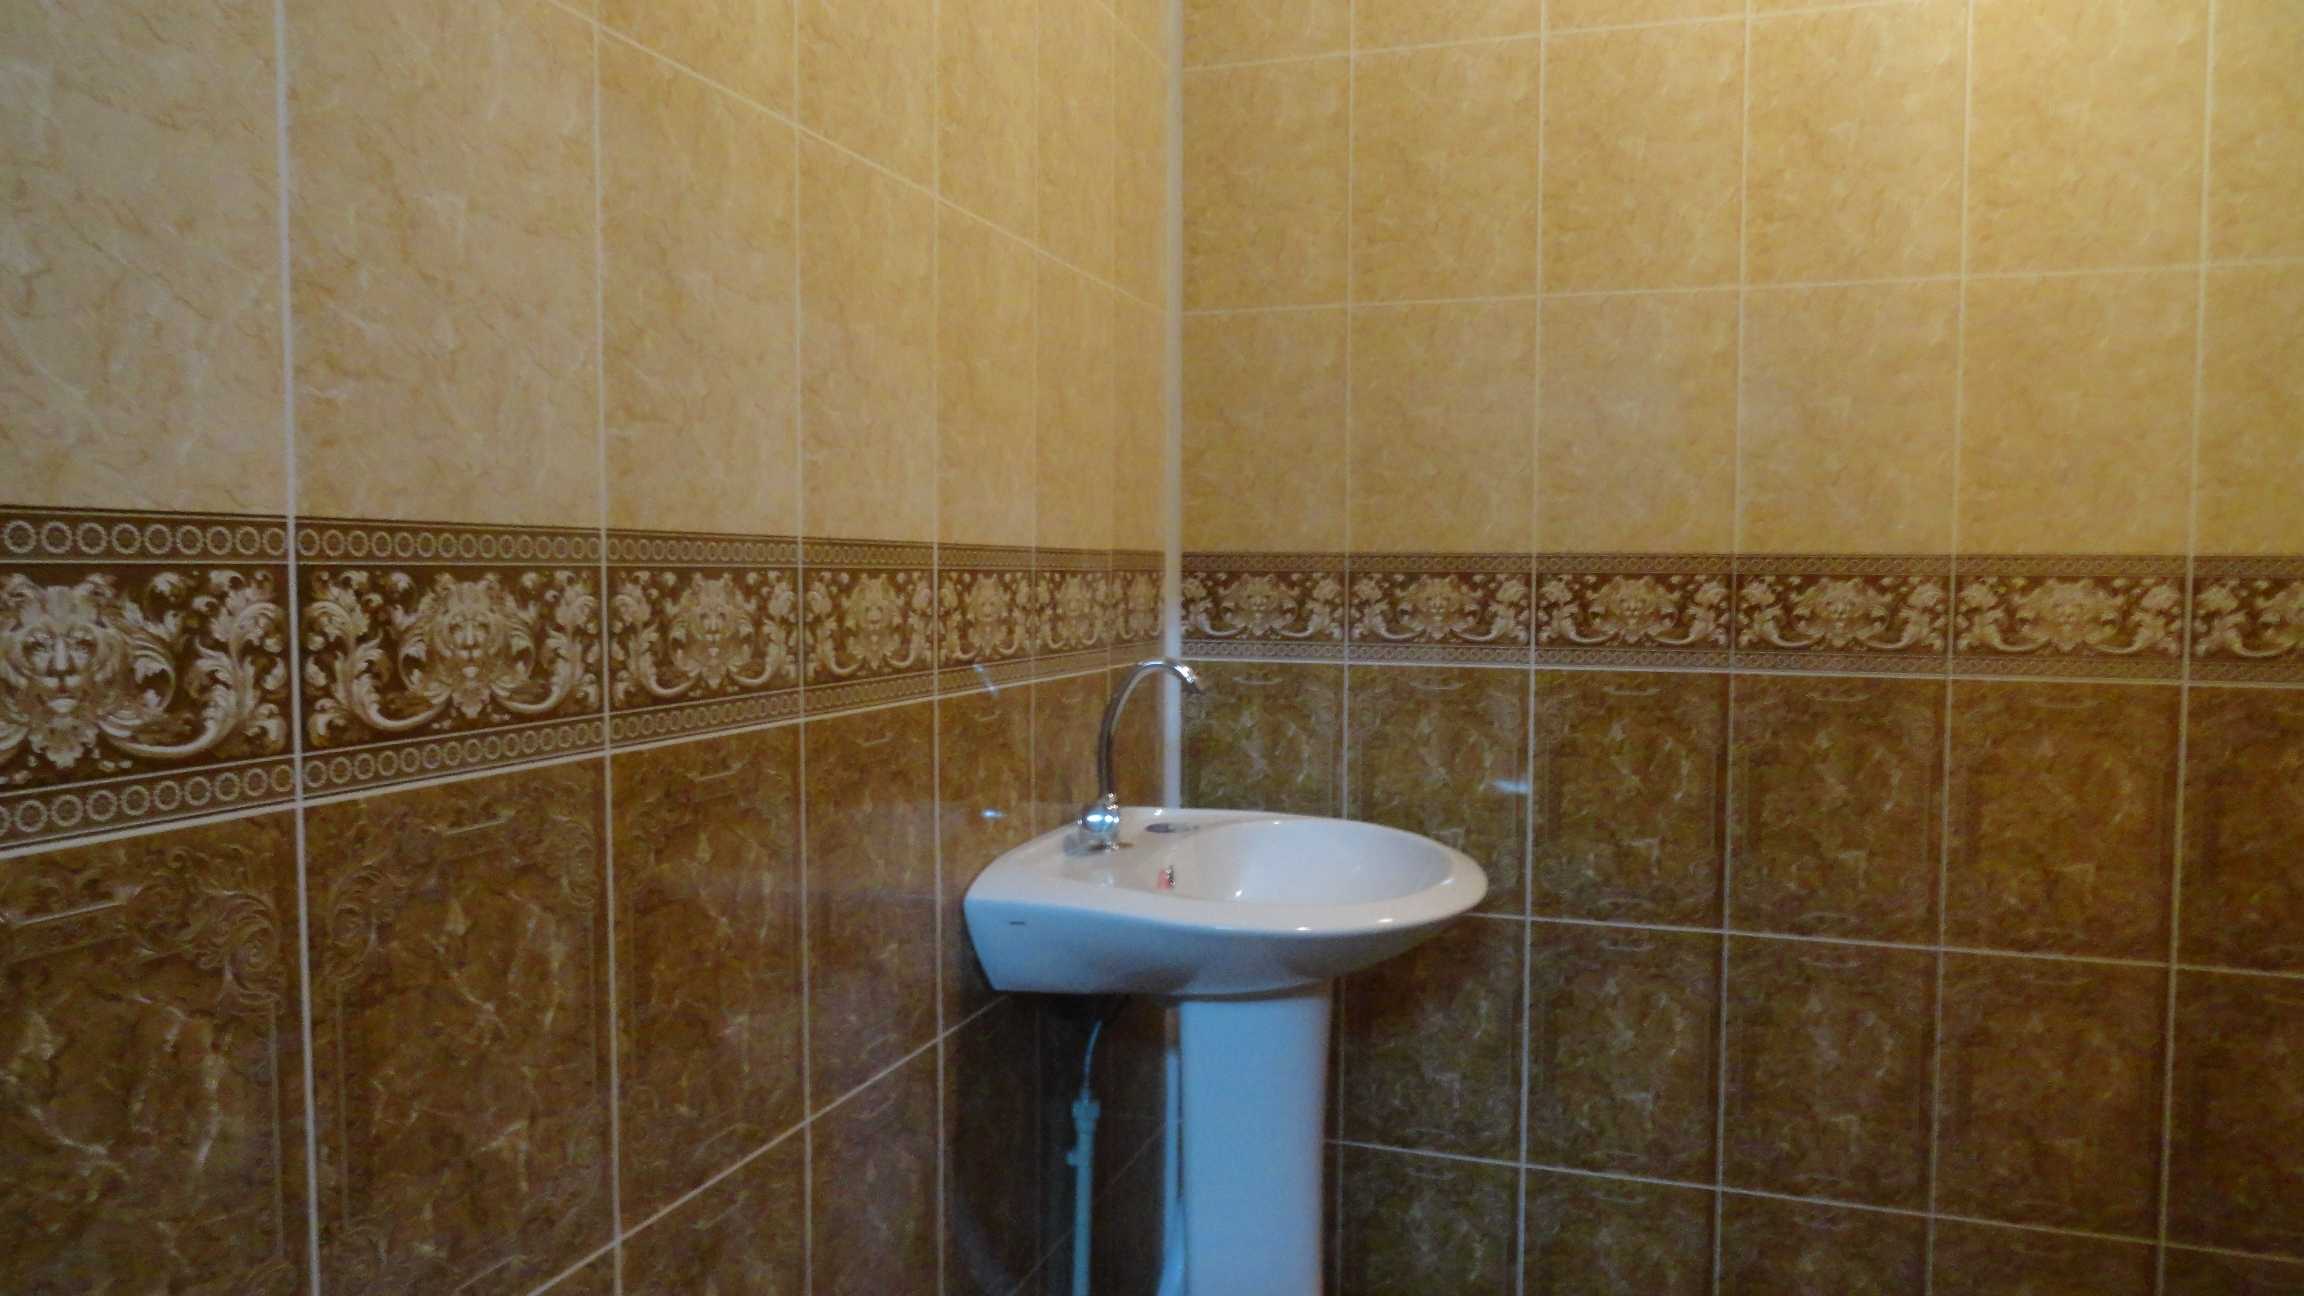 Панели для ванных комнат - стеновые и влагостойкие, установка своими руками